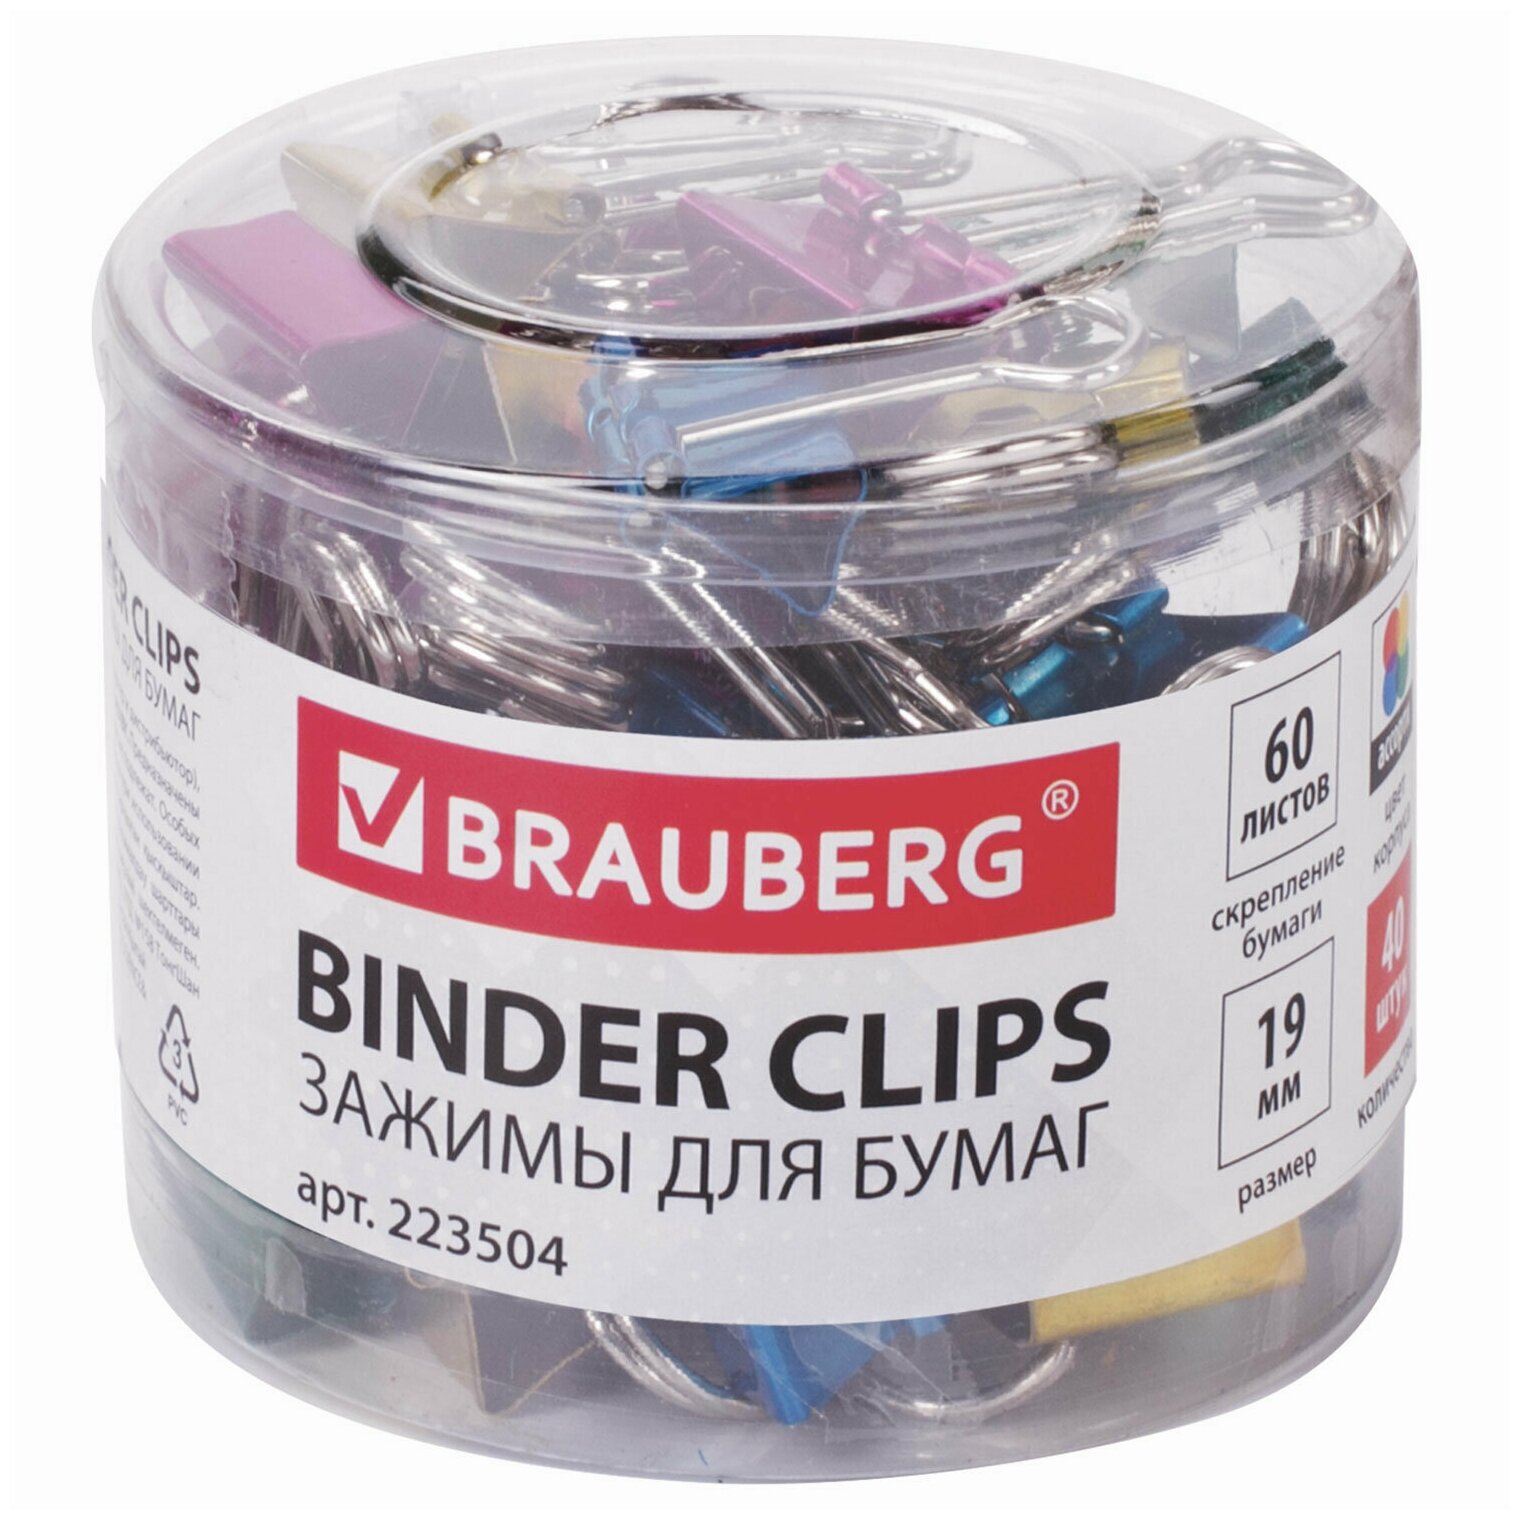 BRAUBERG Зажимы для бумаг brauberg, комплект 40 шт 19 мм, на 60 листов, цвет металлик, пластиковый цилиндр, 223504